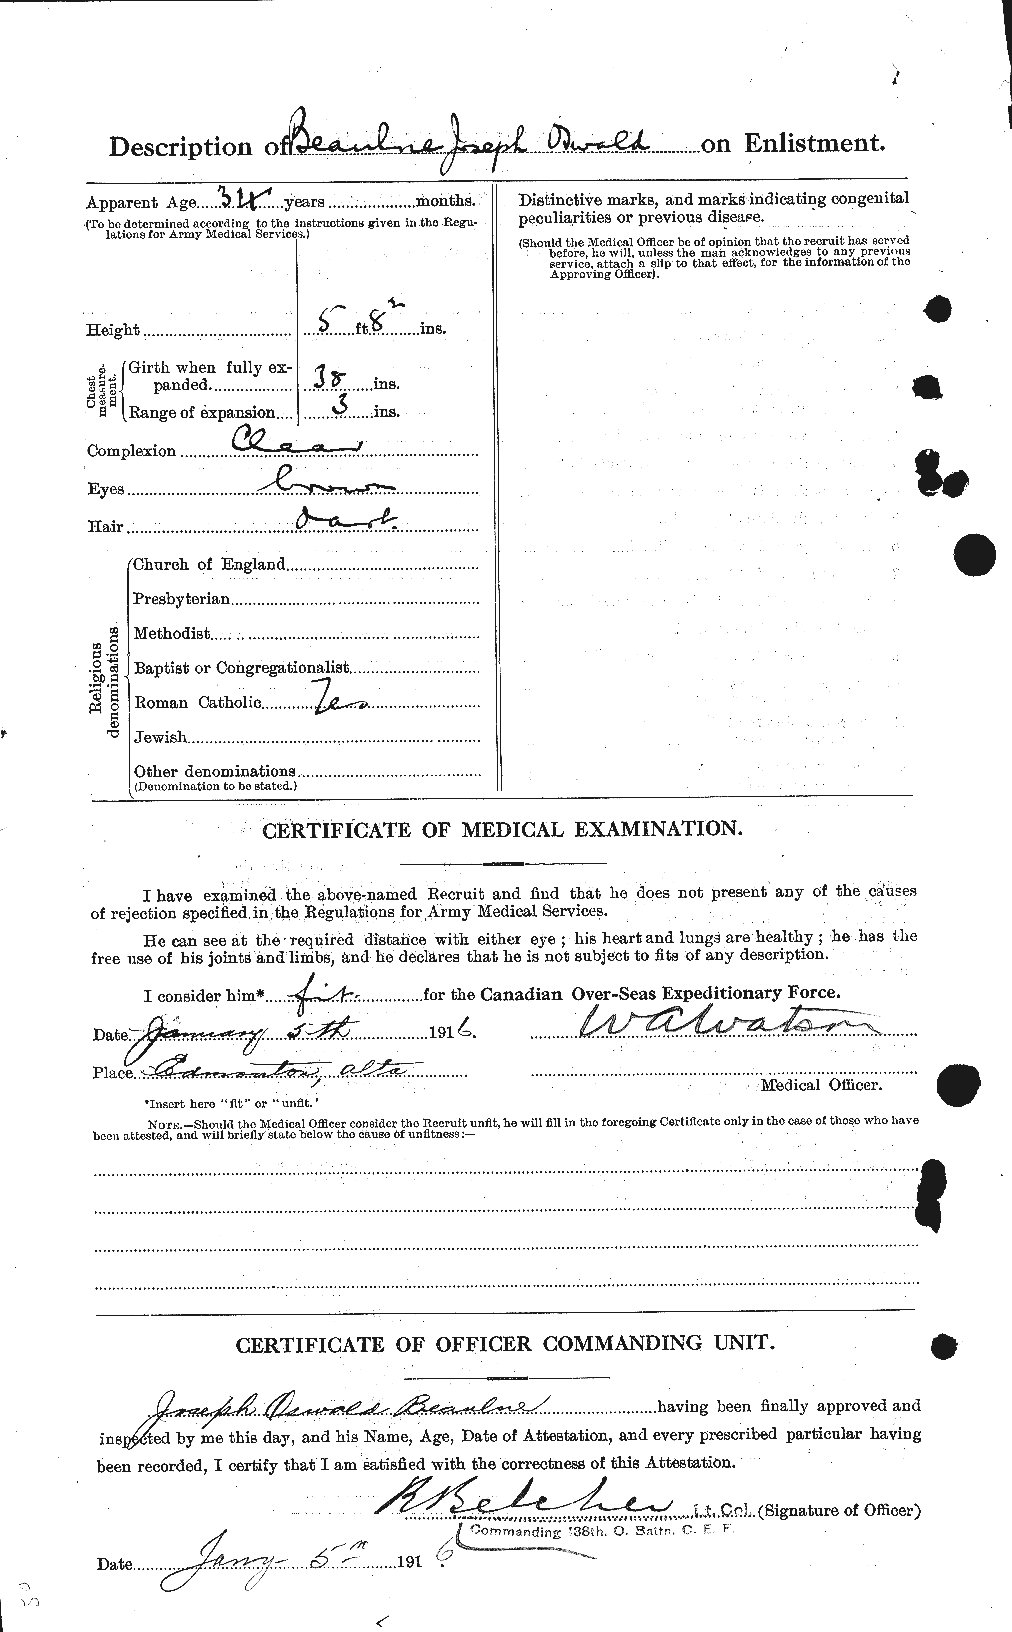 Dossiers du Personnel de la Première Guerre mondiale - CEC 231622b